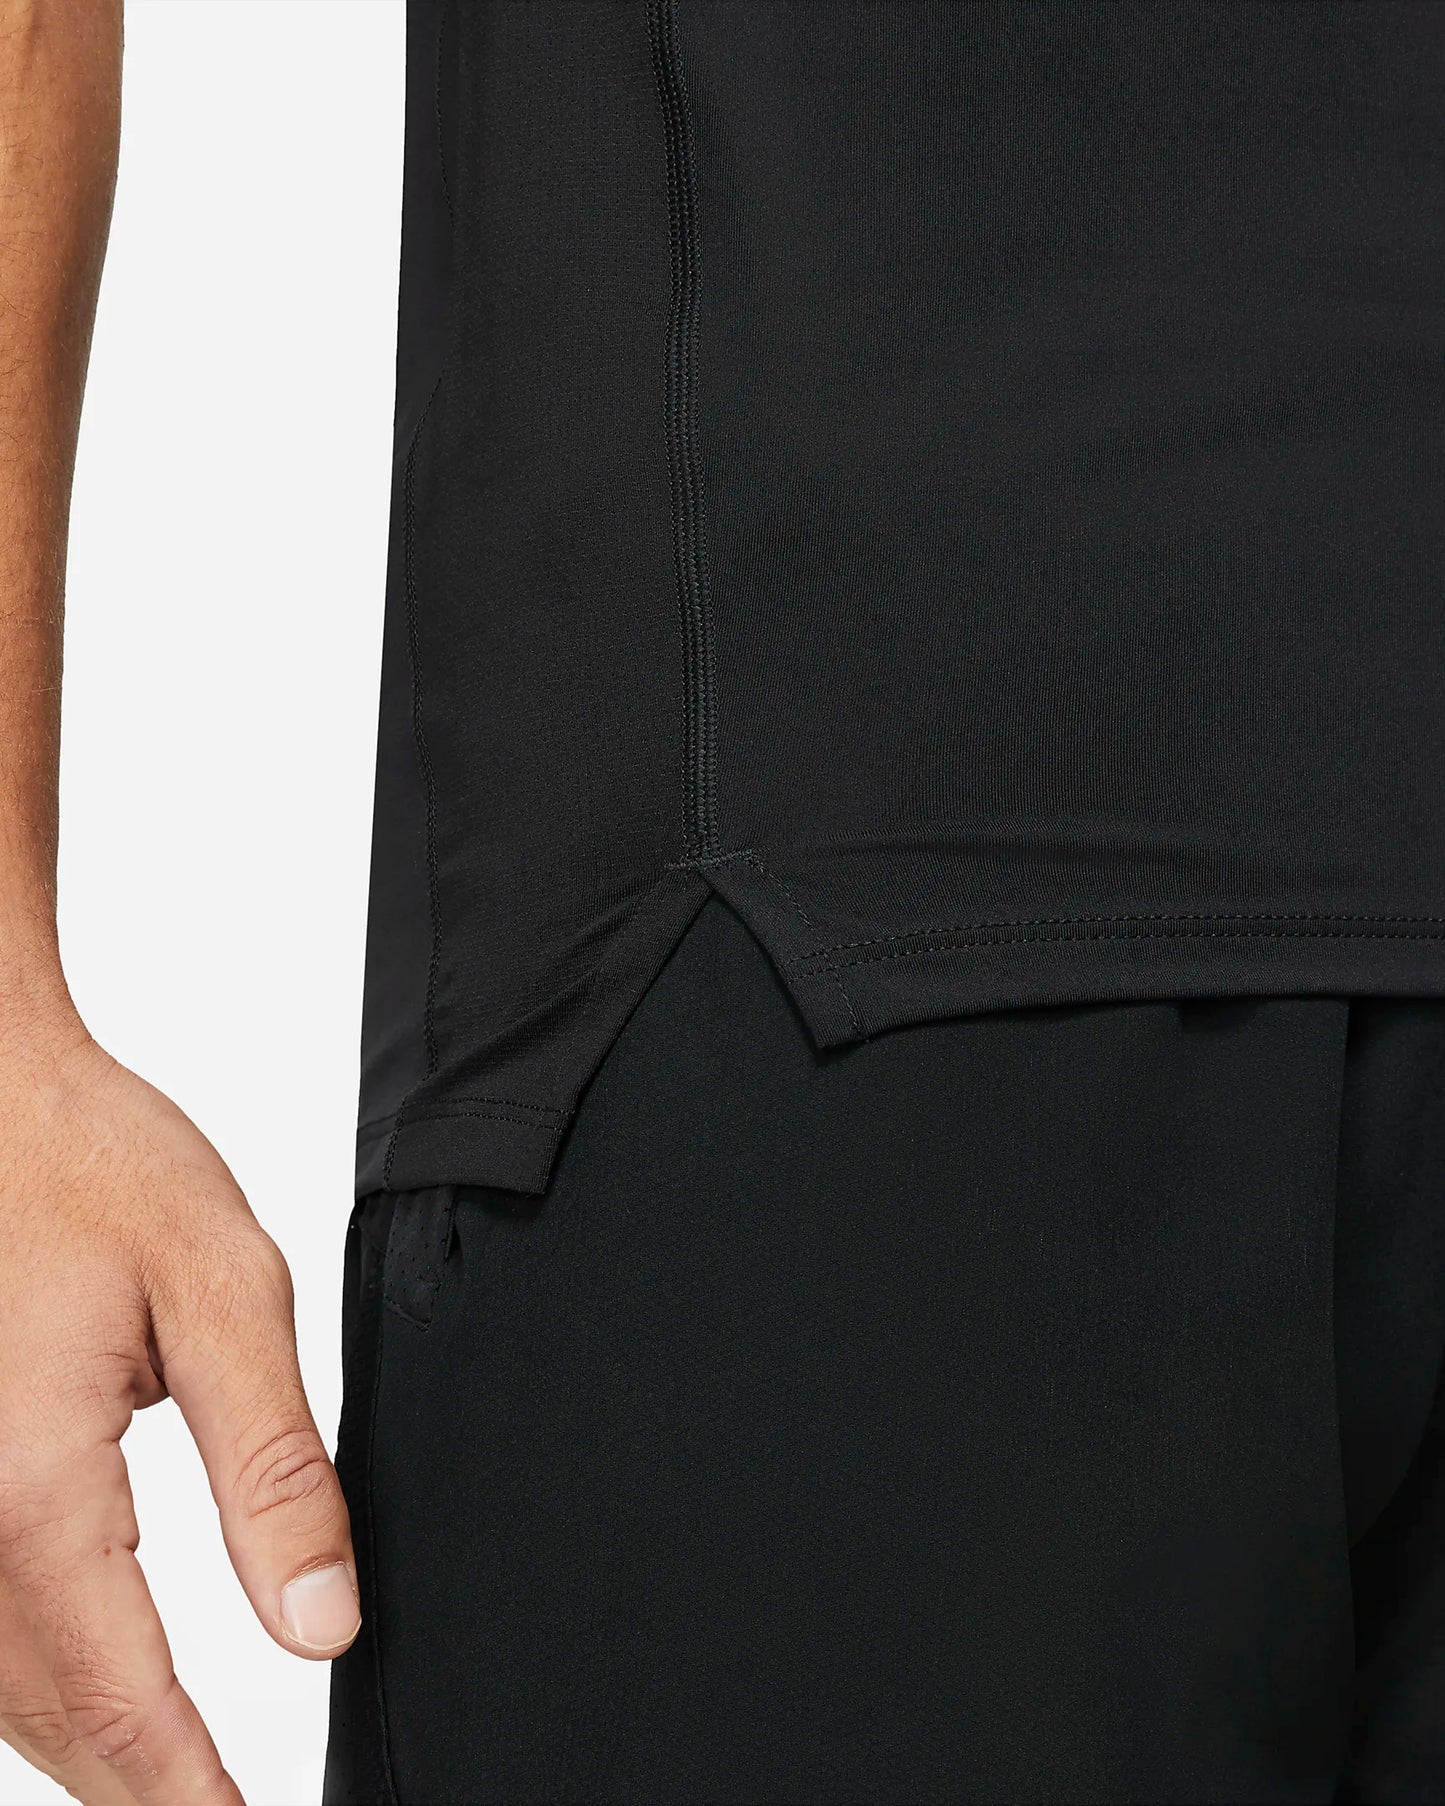 Nike Men's Pro Dri-FIT Slim Fit Sleeveless Top, Black/White